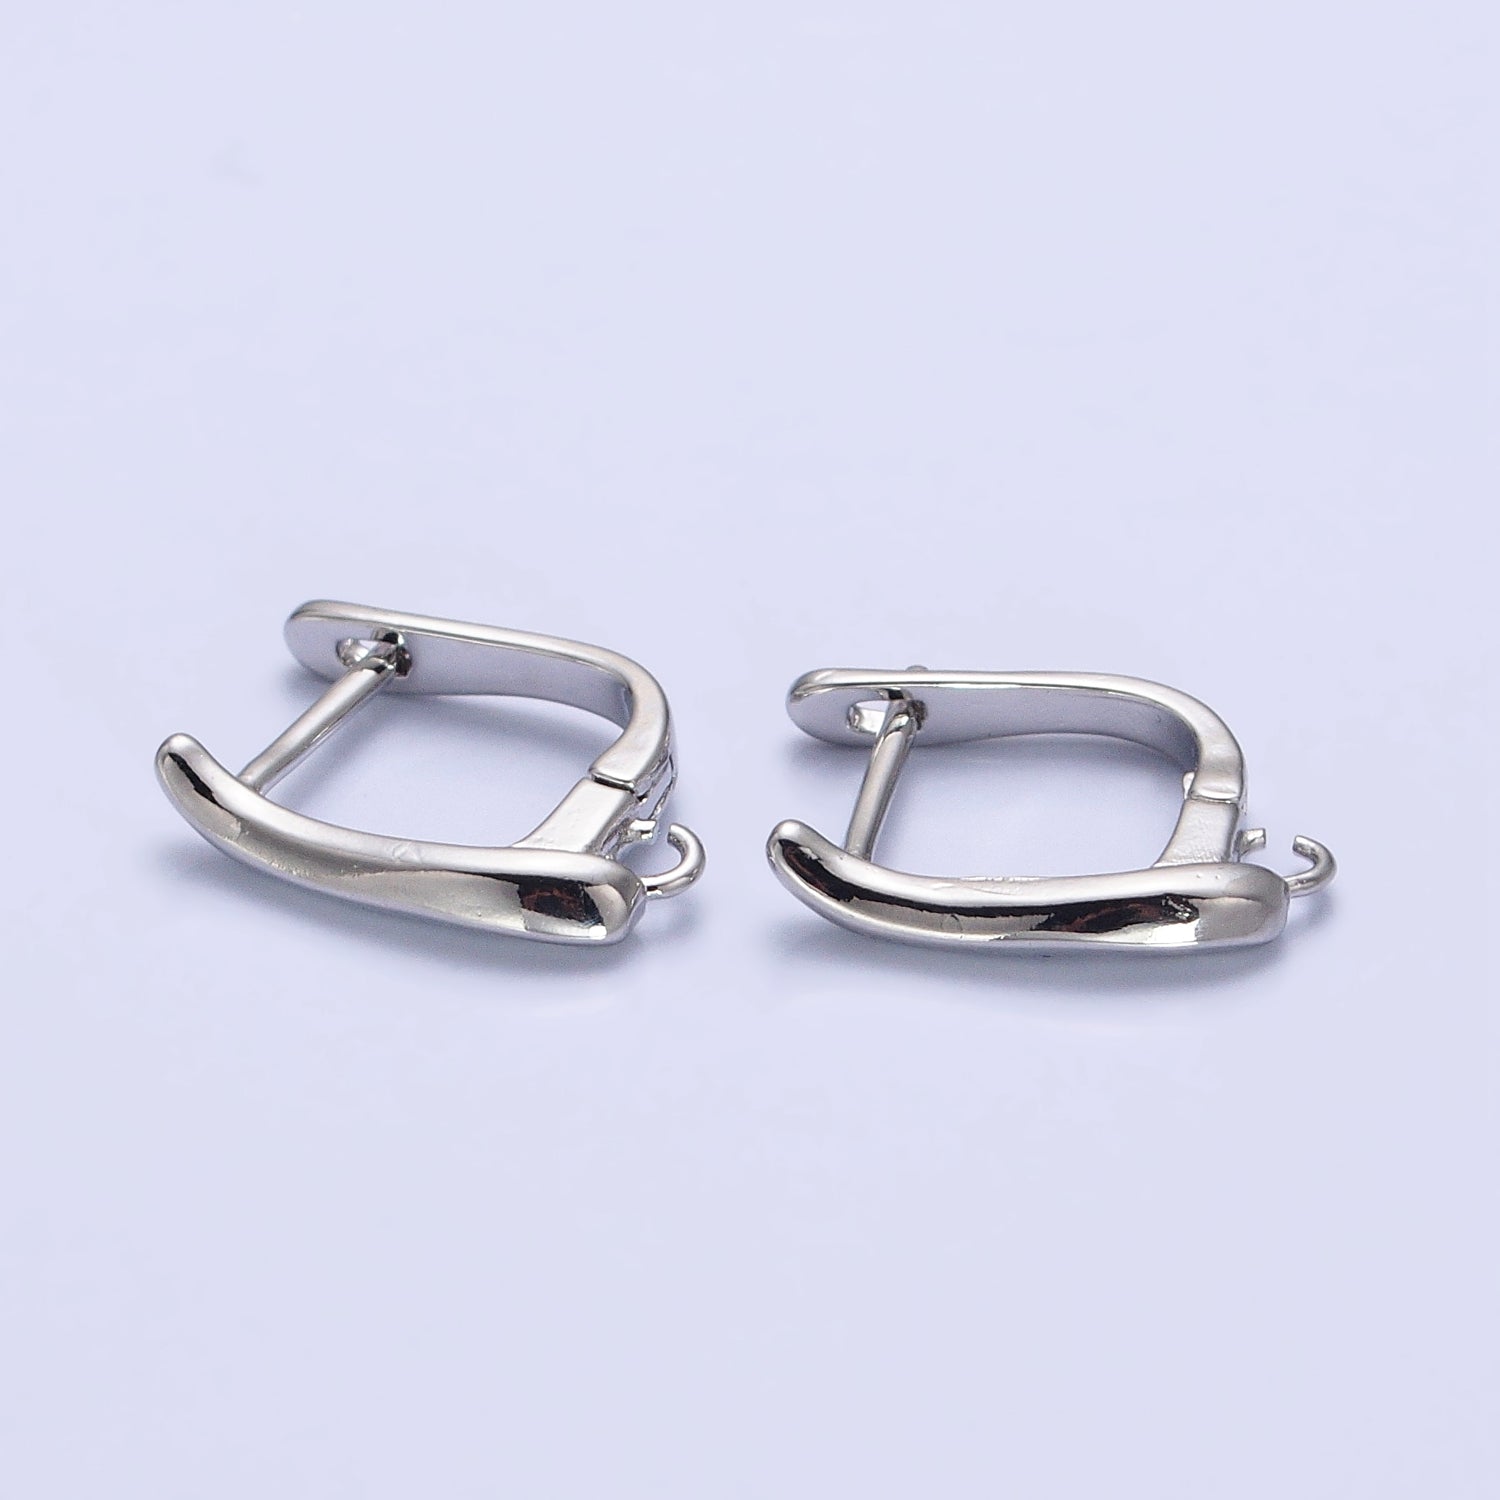 Dainty Gold Leverback Earring Silver Open Link Huggie Earring for Jewelry Making Supply Z-156 Z-157 - DLUXCA